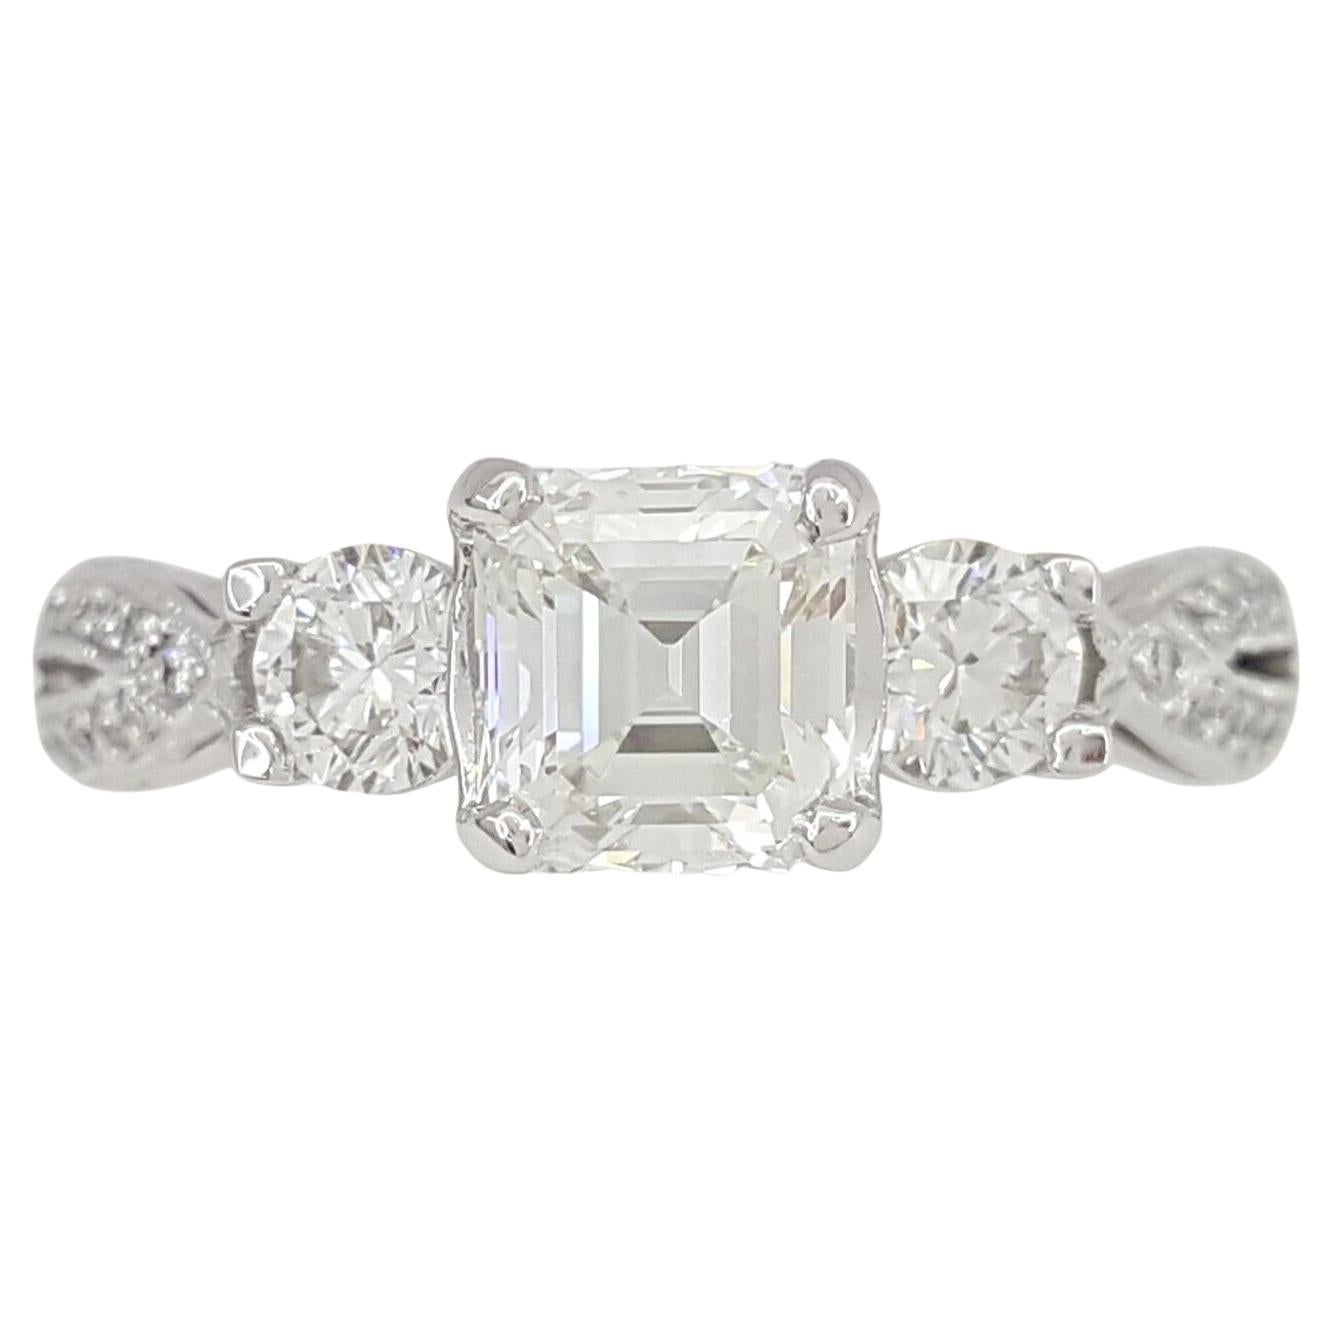 Tacori Asscher Cut Diamond 3-Stone Engagement Ring